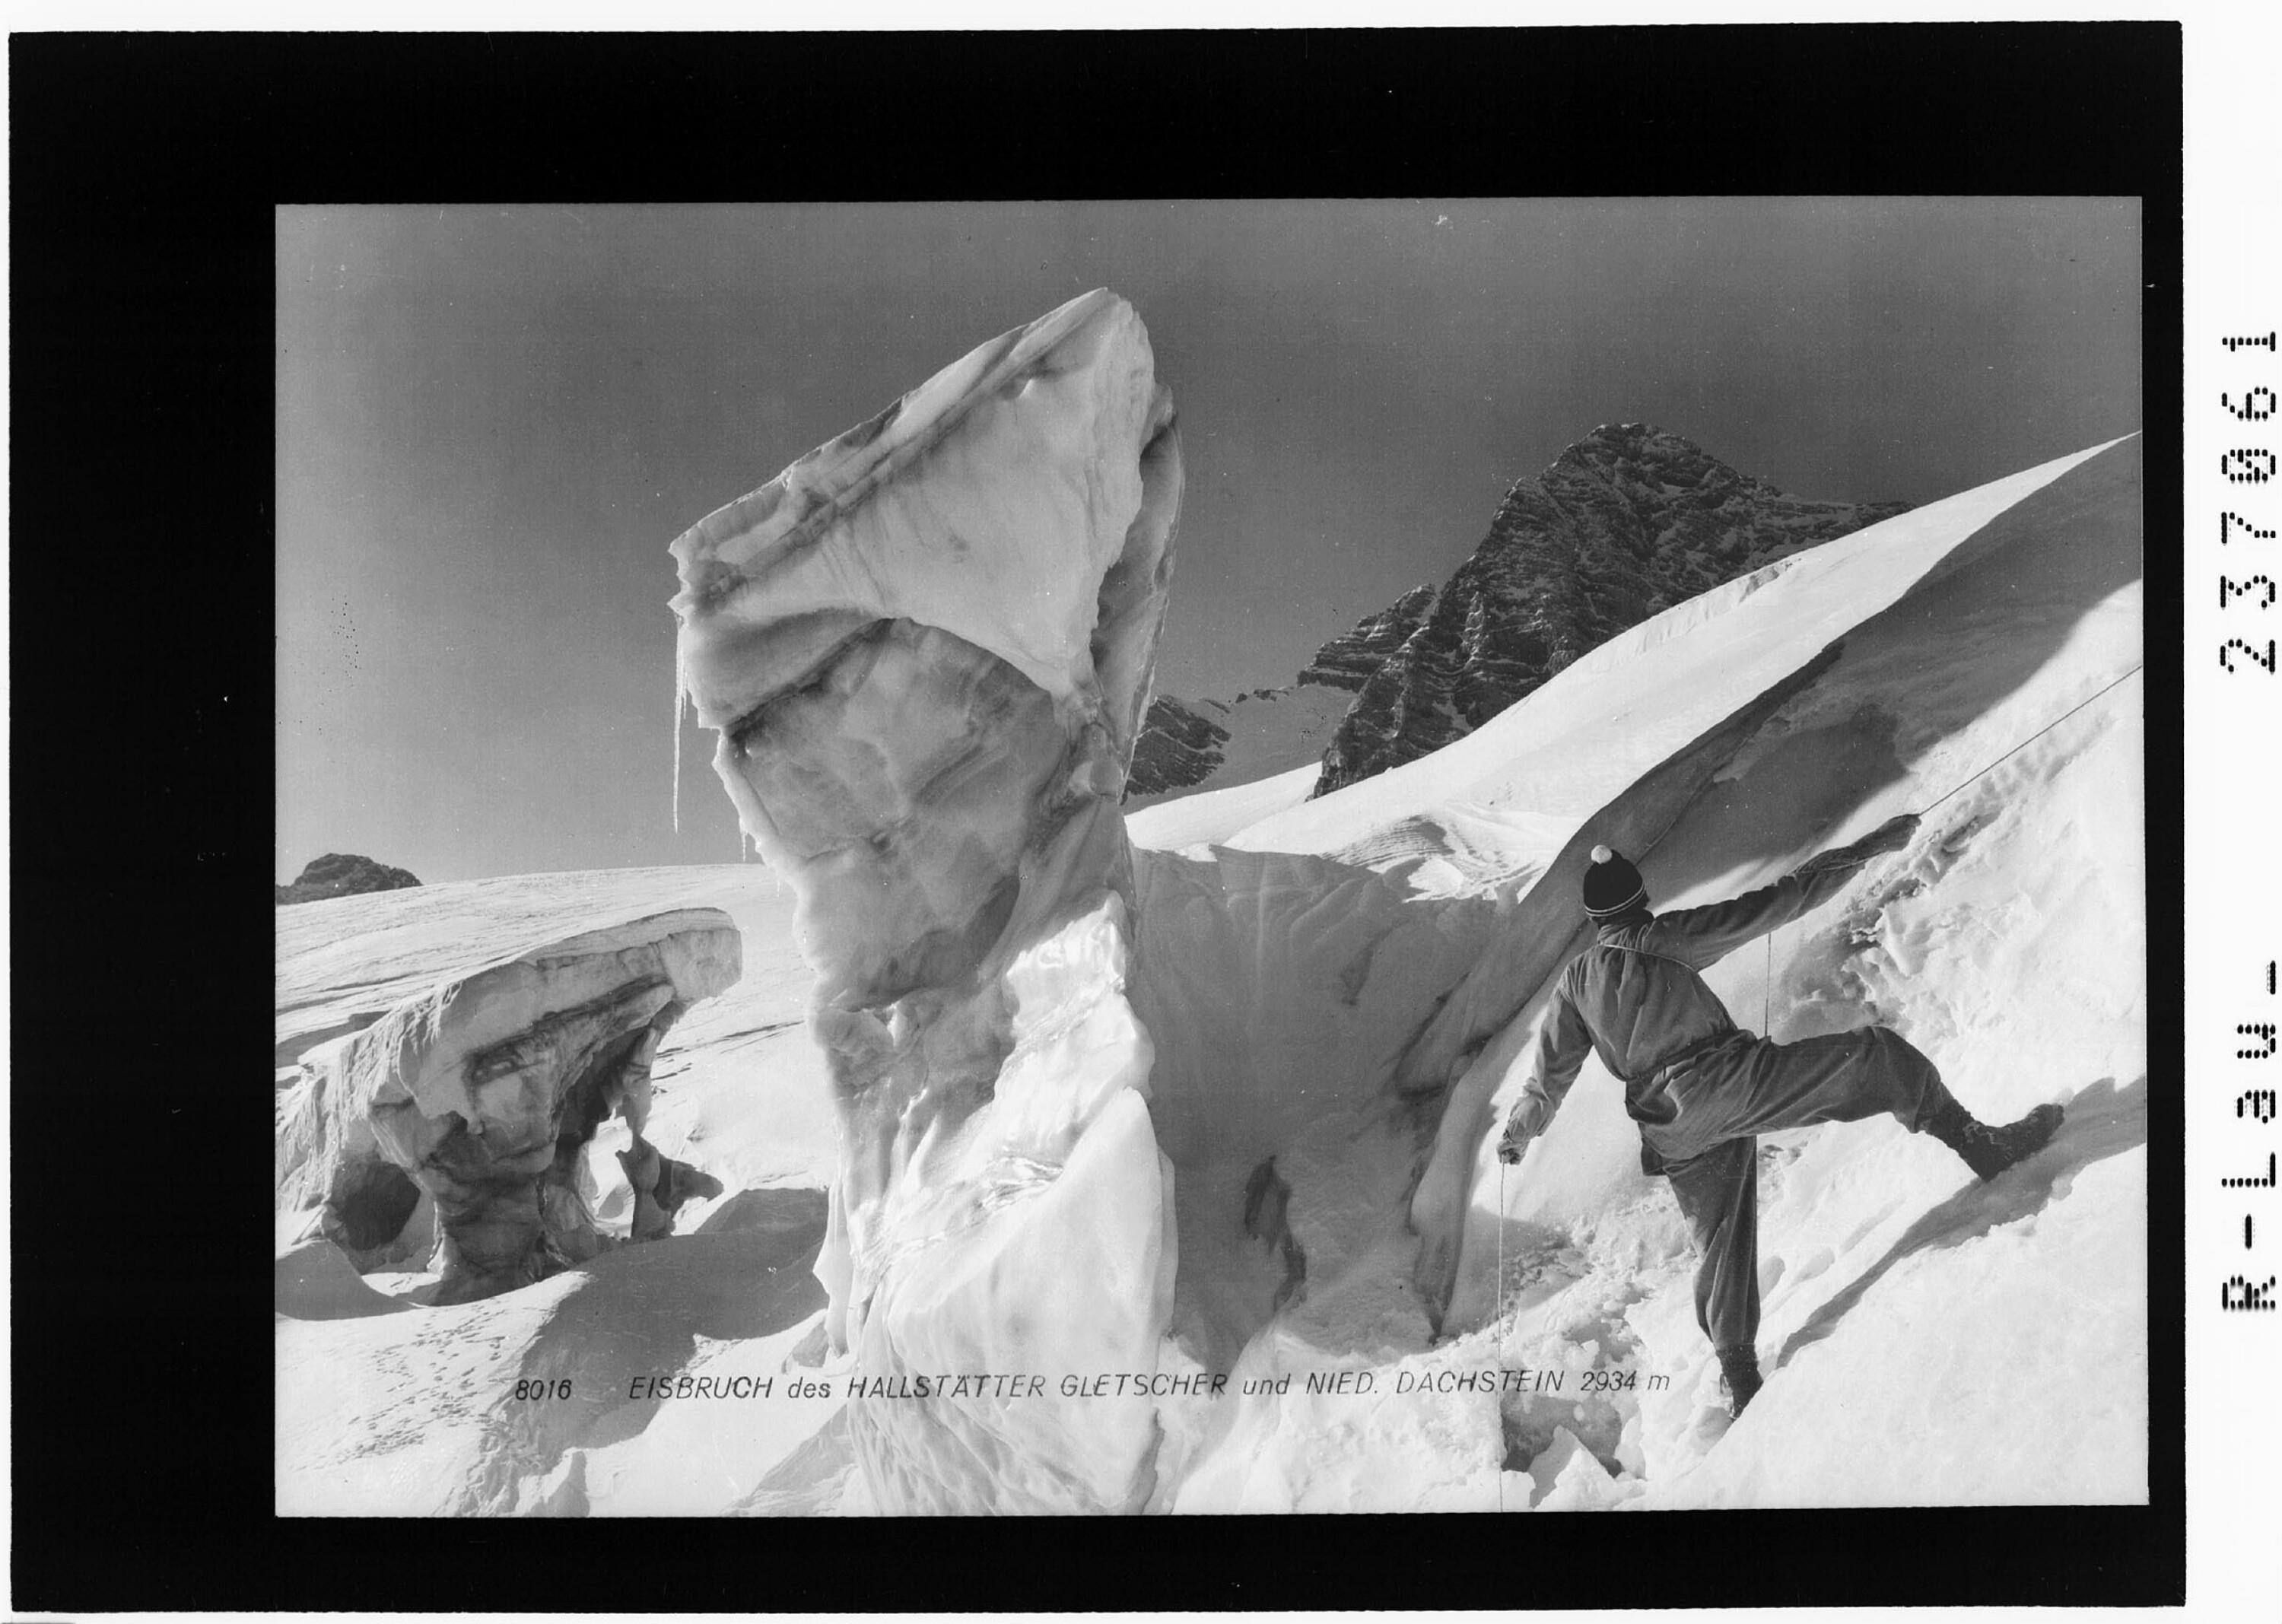 Eisbruch des Hallstätter Gletscher und Niederer Dachstein 2934 m></div>


    <hr>
    <div class=